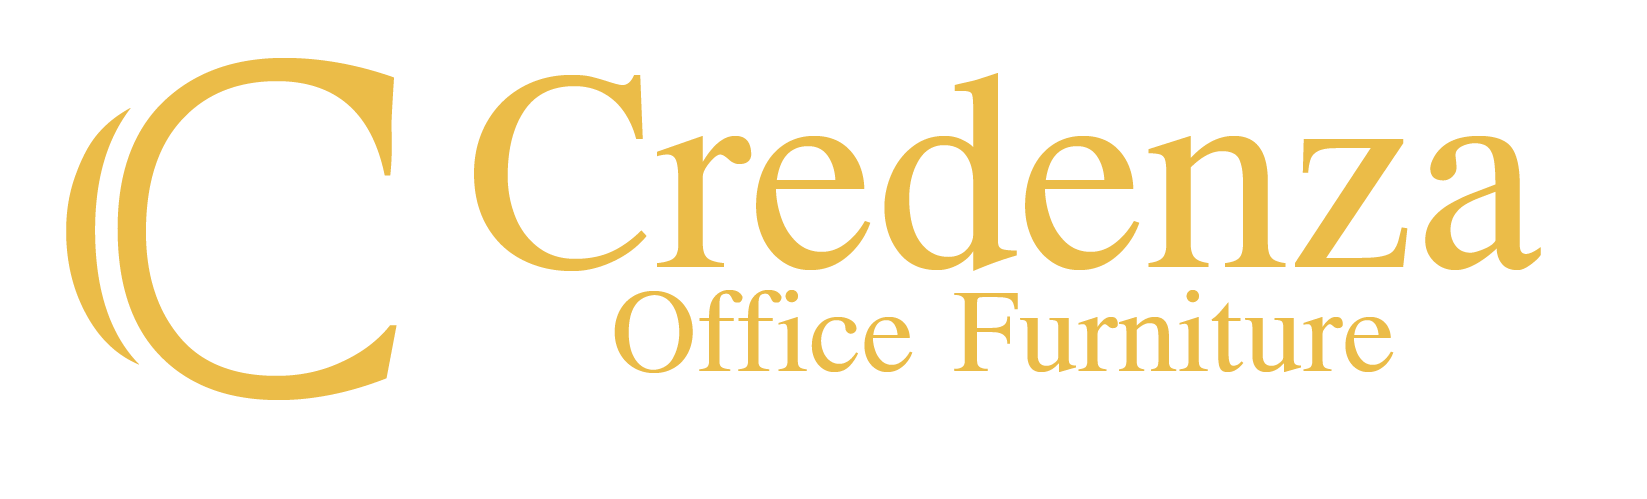 Credenza furniture